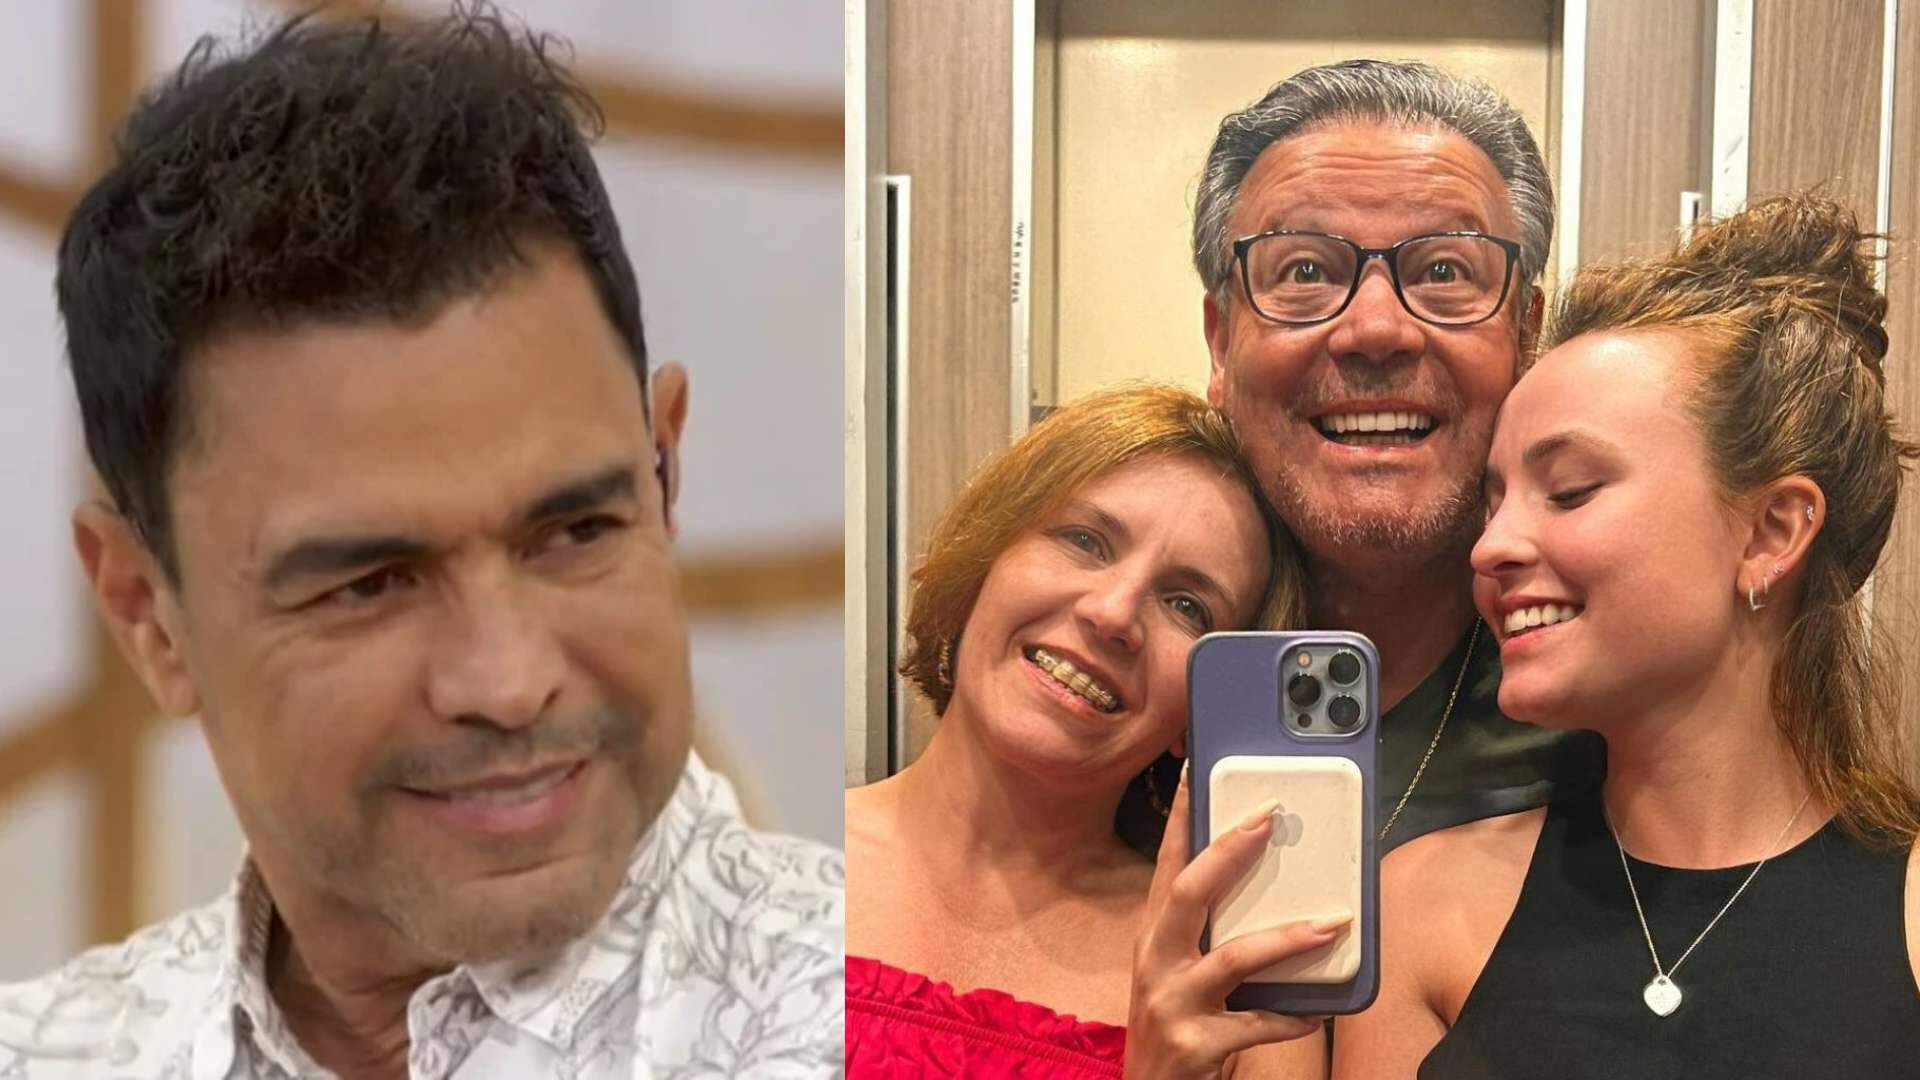 Amigo da família, Zezé di Camargo revela o que viveu com Larissa Manoela e expõe segredos íntimos ao vivo - Metropolitana FM